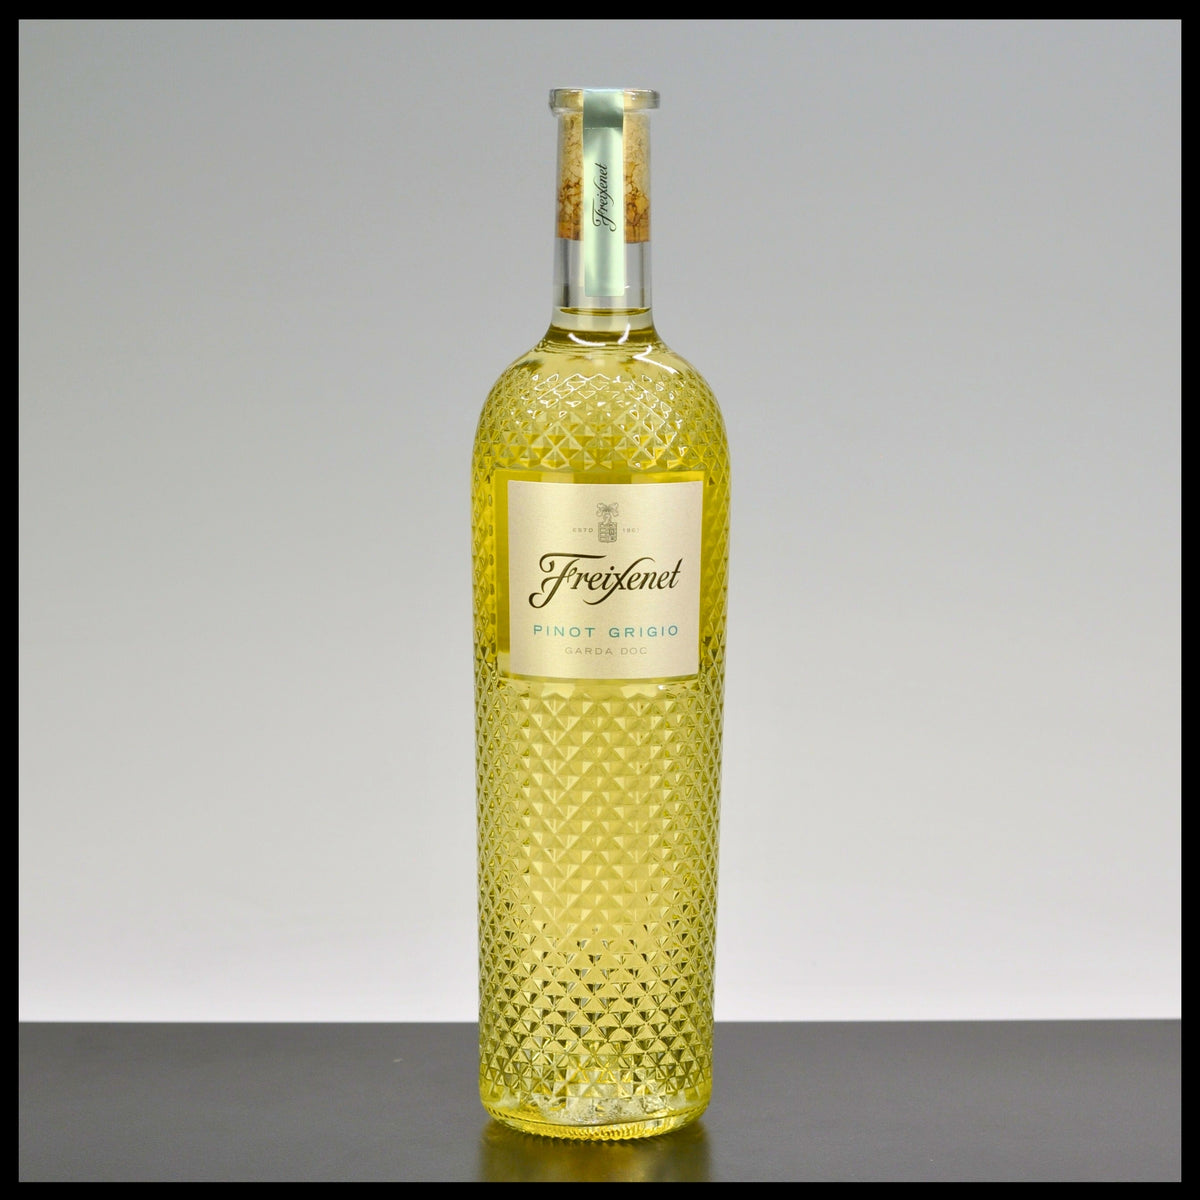 Freixenet Pinot Grigio Garda DOC 0,75L - 11,5% Vol.